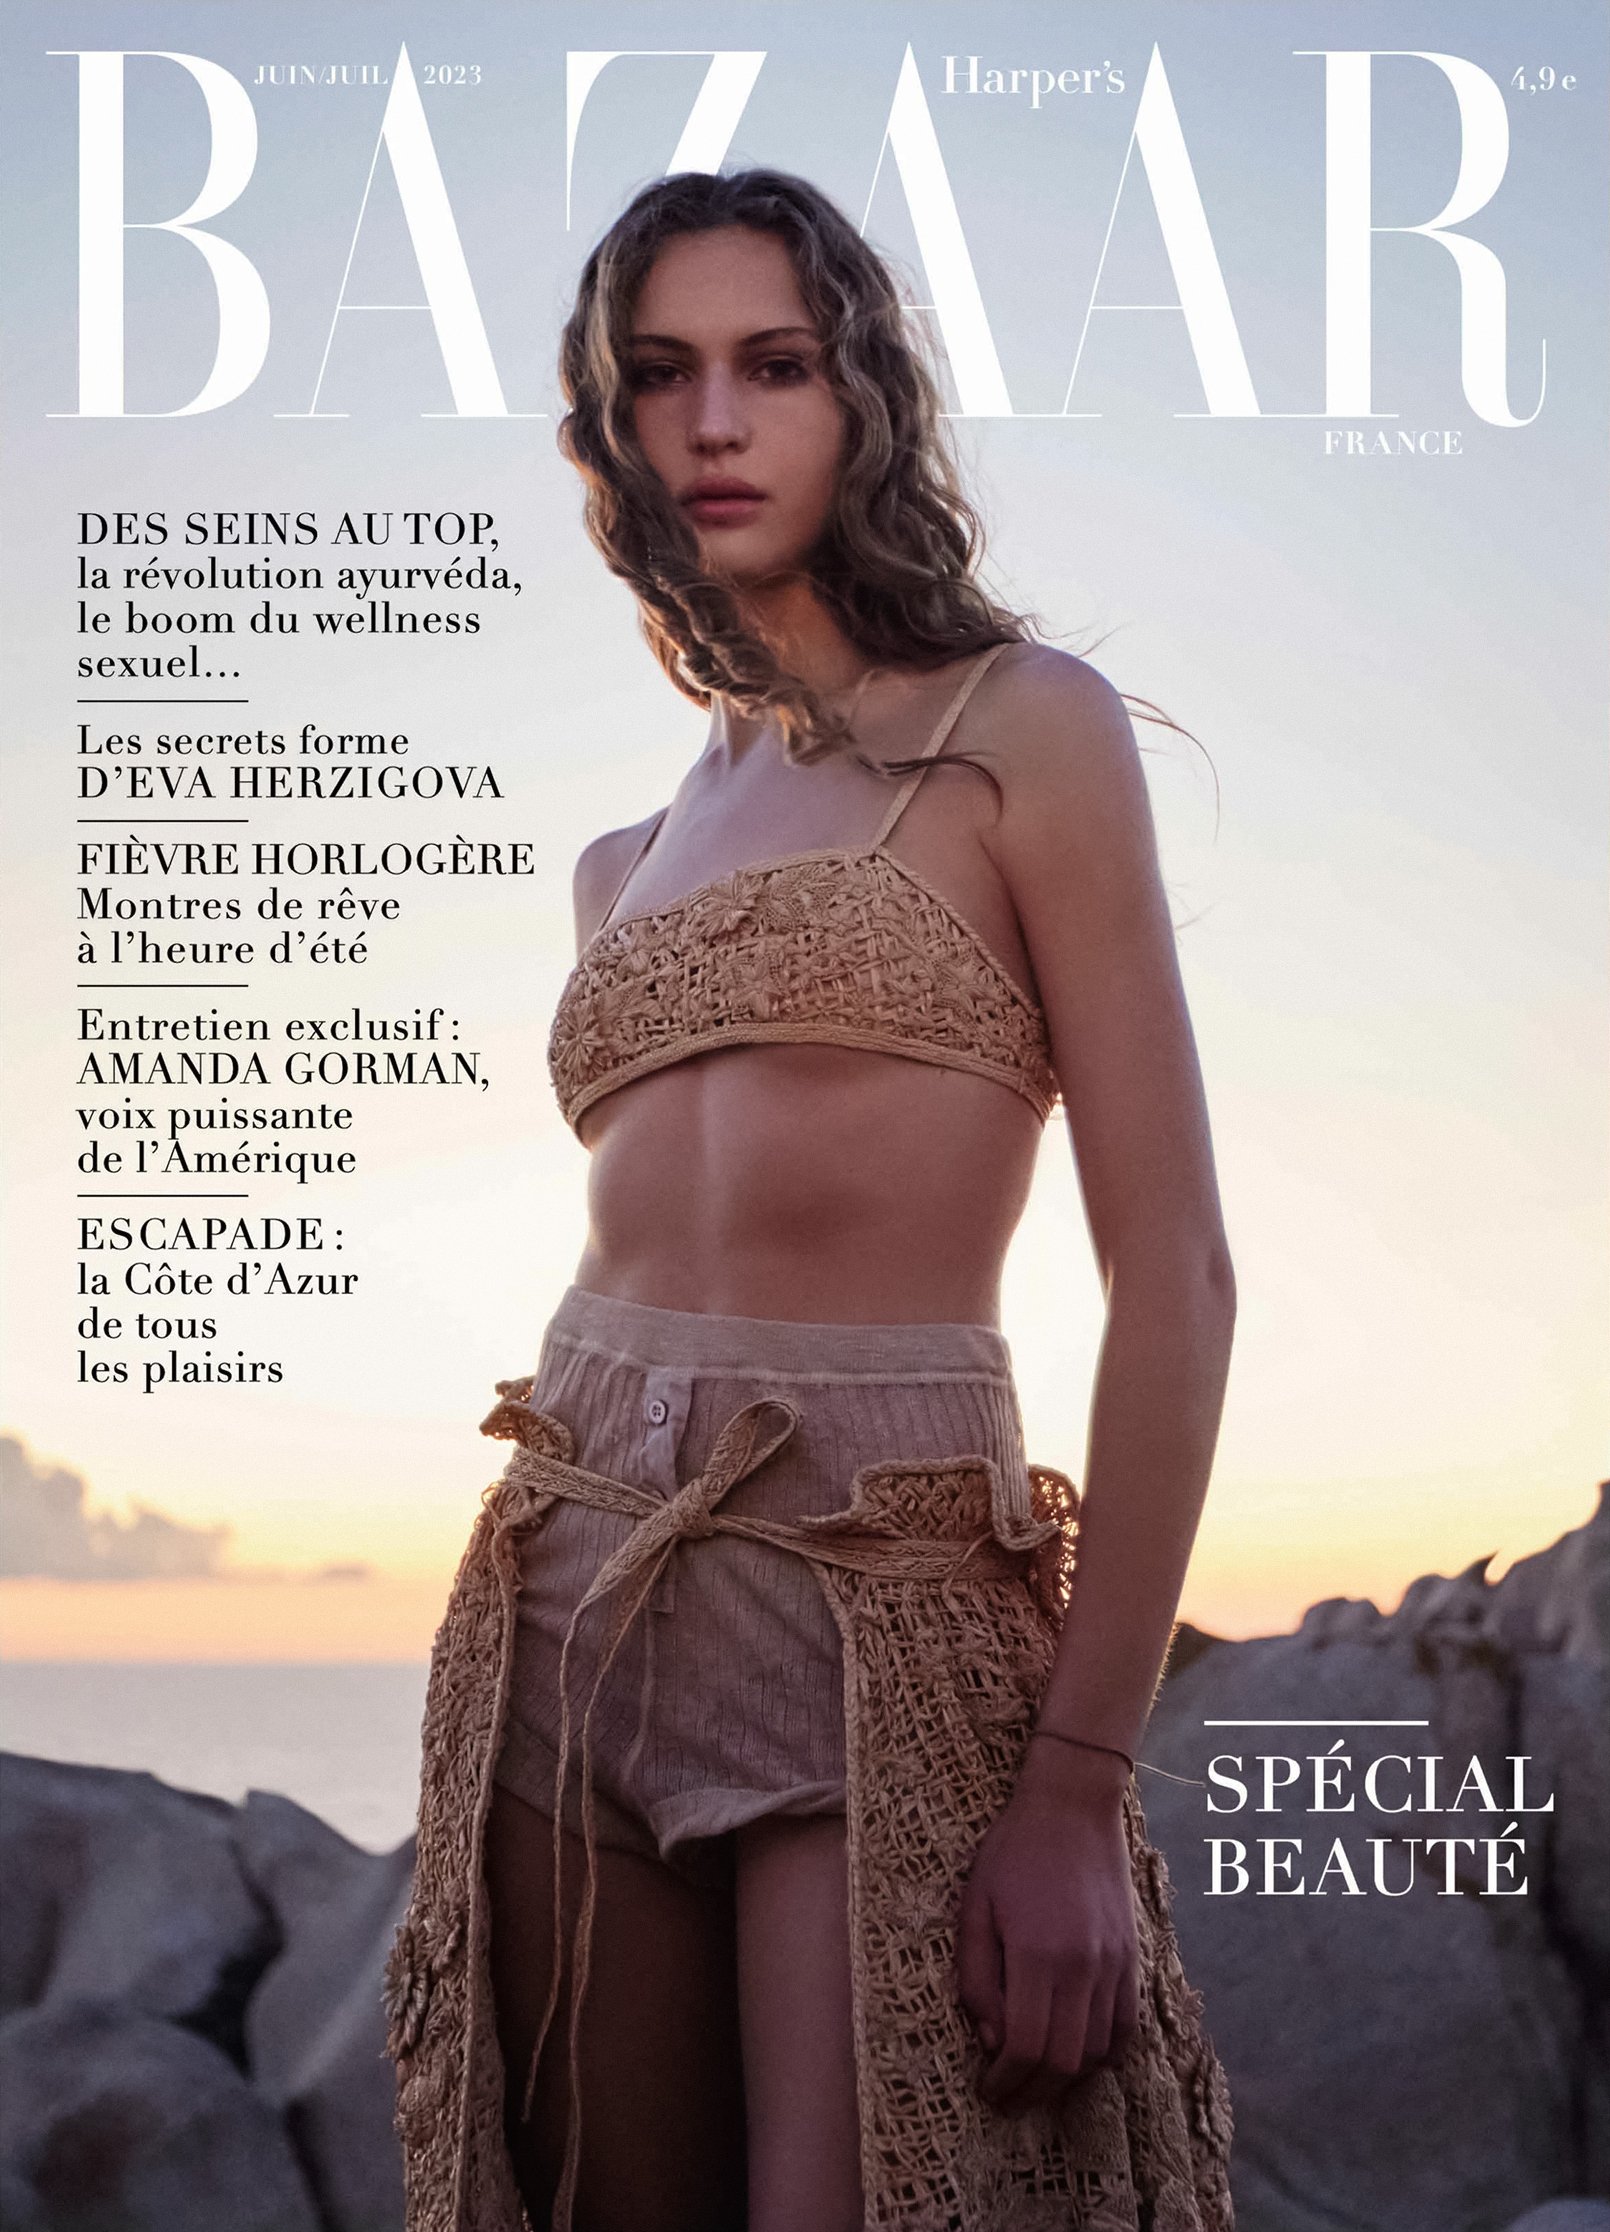 Harpers-Bazaar-June-July-2023-Covers-by-Mario-Sorrenti00001.jpeg